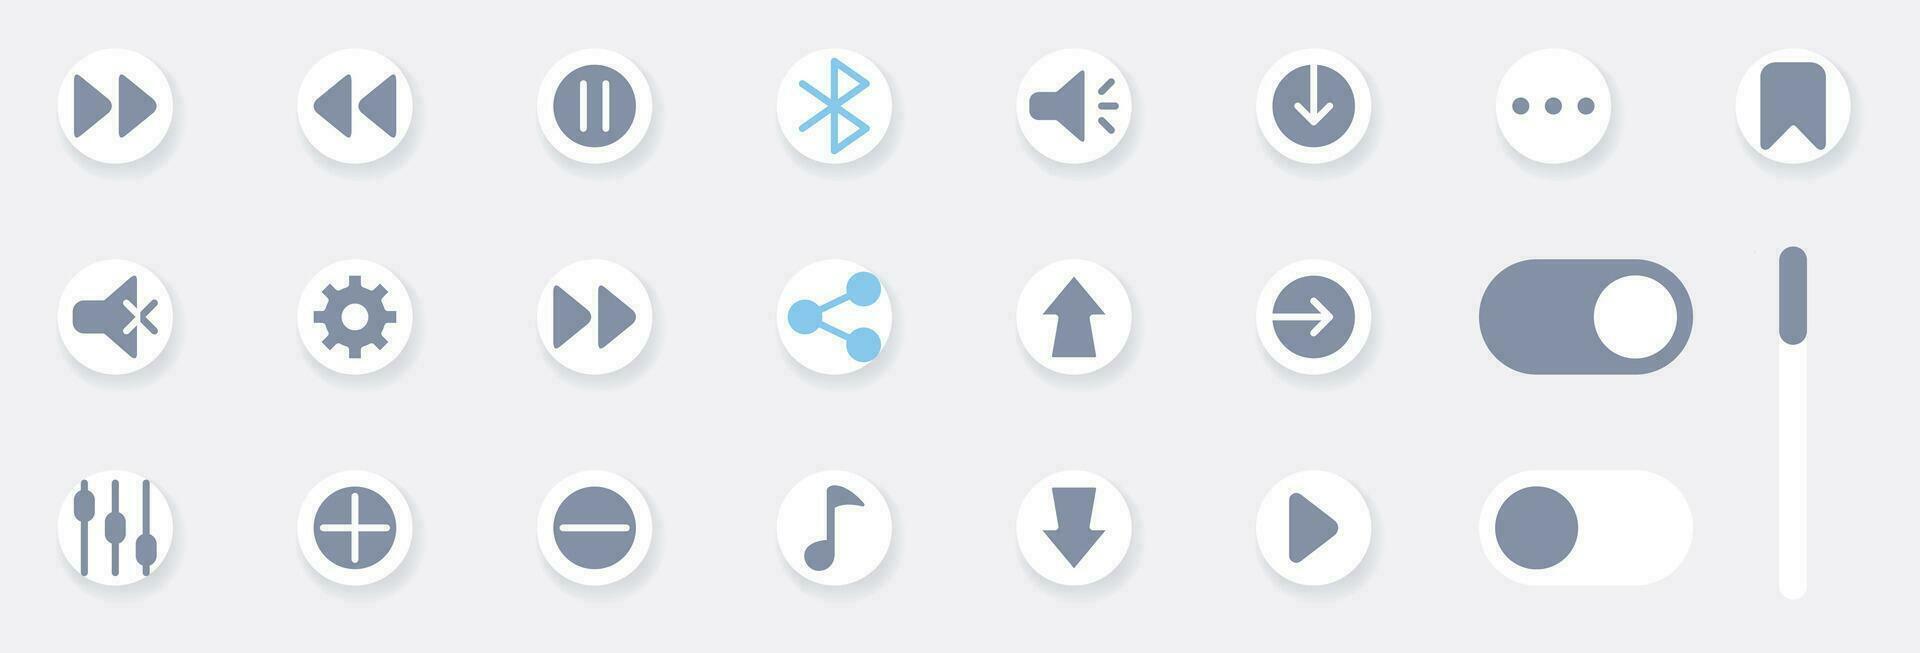 muziek- Speel knop pictogrammen vullen perfect. de verzameling omvat voor media speler pictogrammen, muziek, koppel, ontwerp media speler toetsen, ui ontwerp en enz. vector